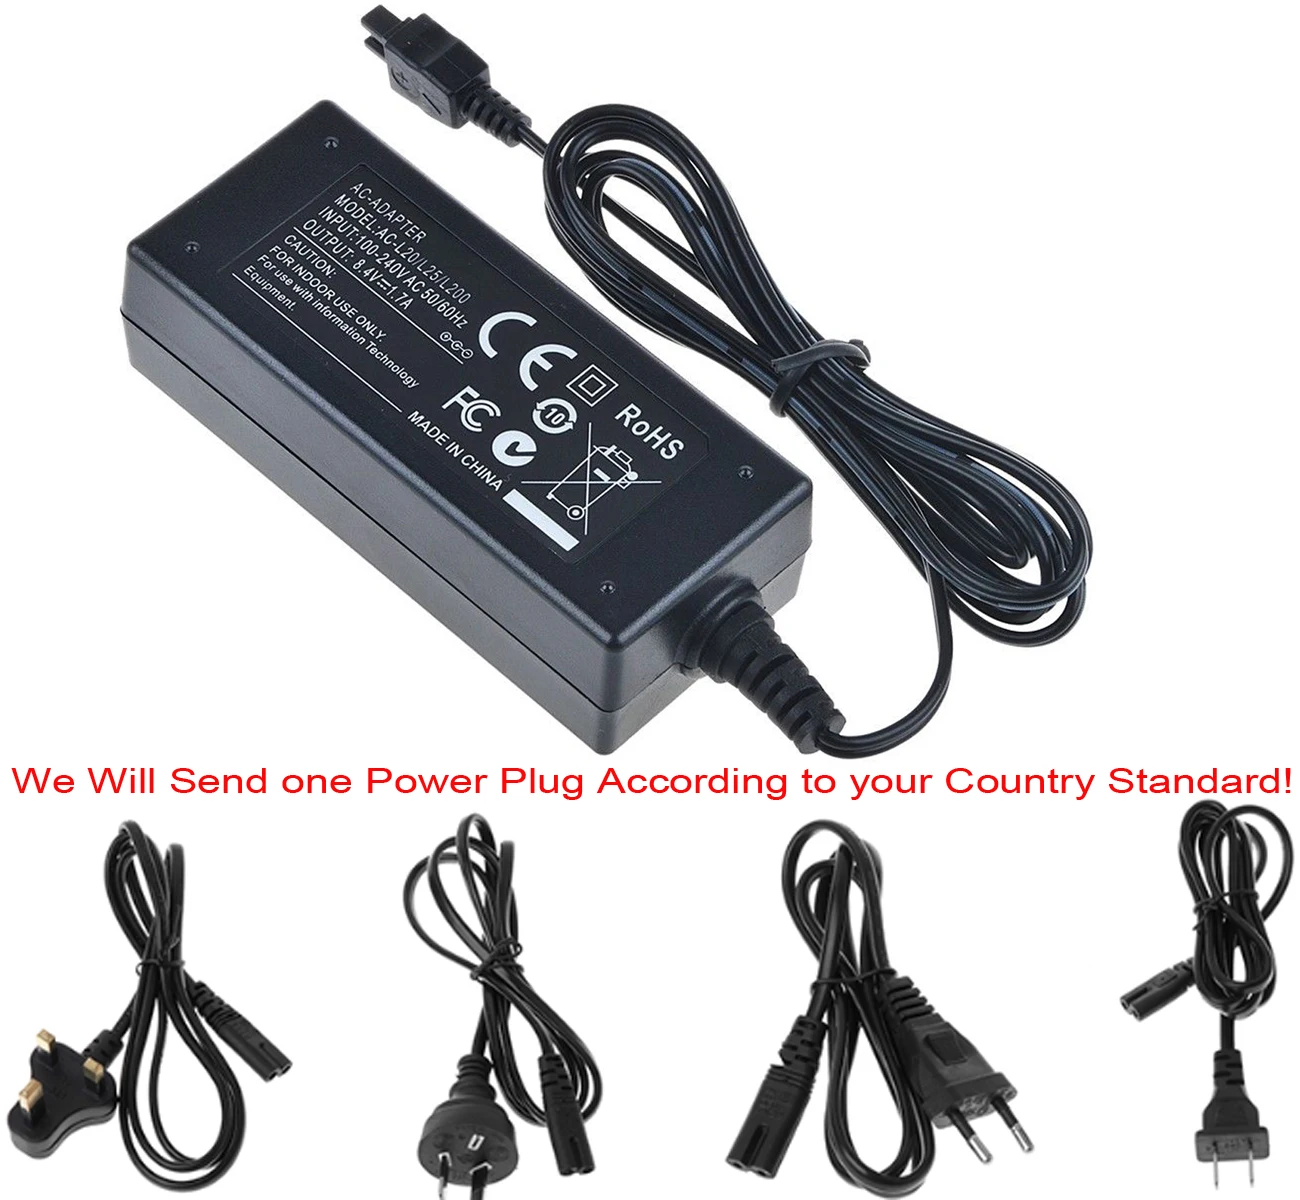 DCR-SR62 USB Travel Battery Charger for Sony DCR-SR60 DCR-SR60E DCR-SR62E Handycam Camcorder